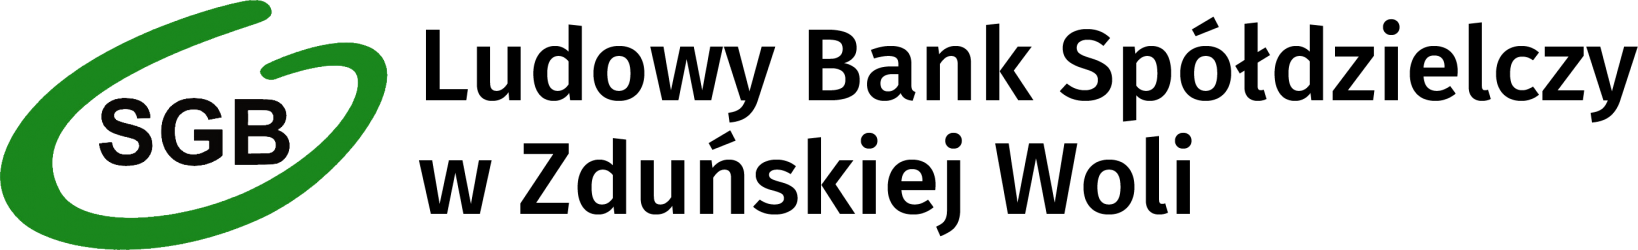 images_kwiecien_2020_logo